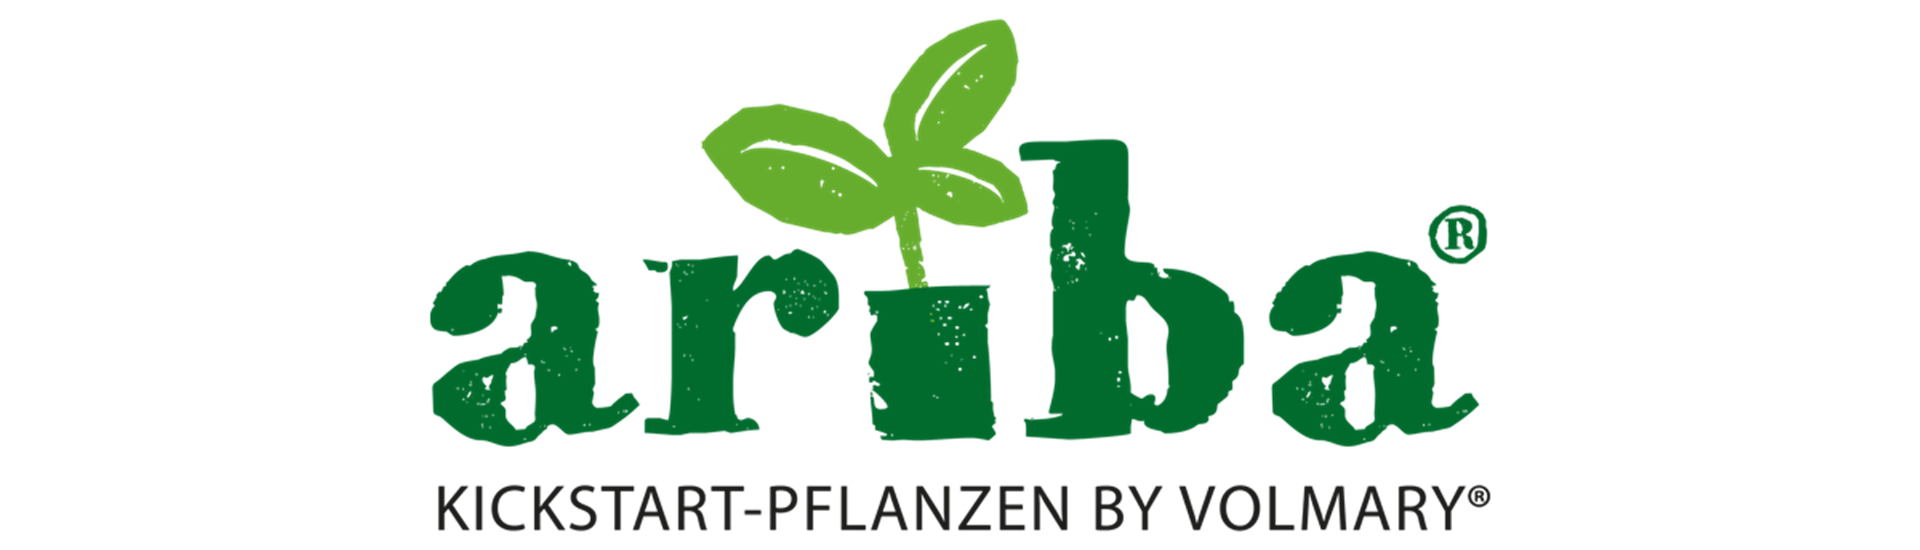 ariba-jungpflanzen-volmary-4_Kopie_1.png